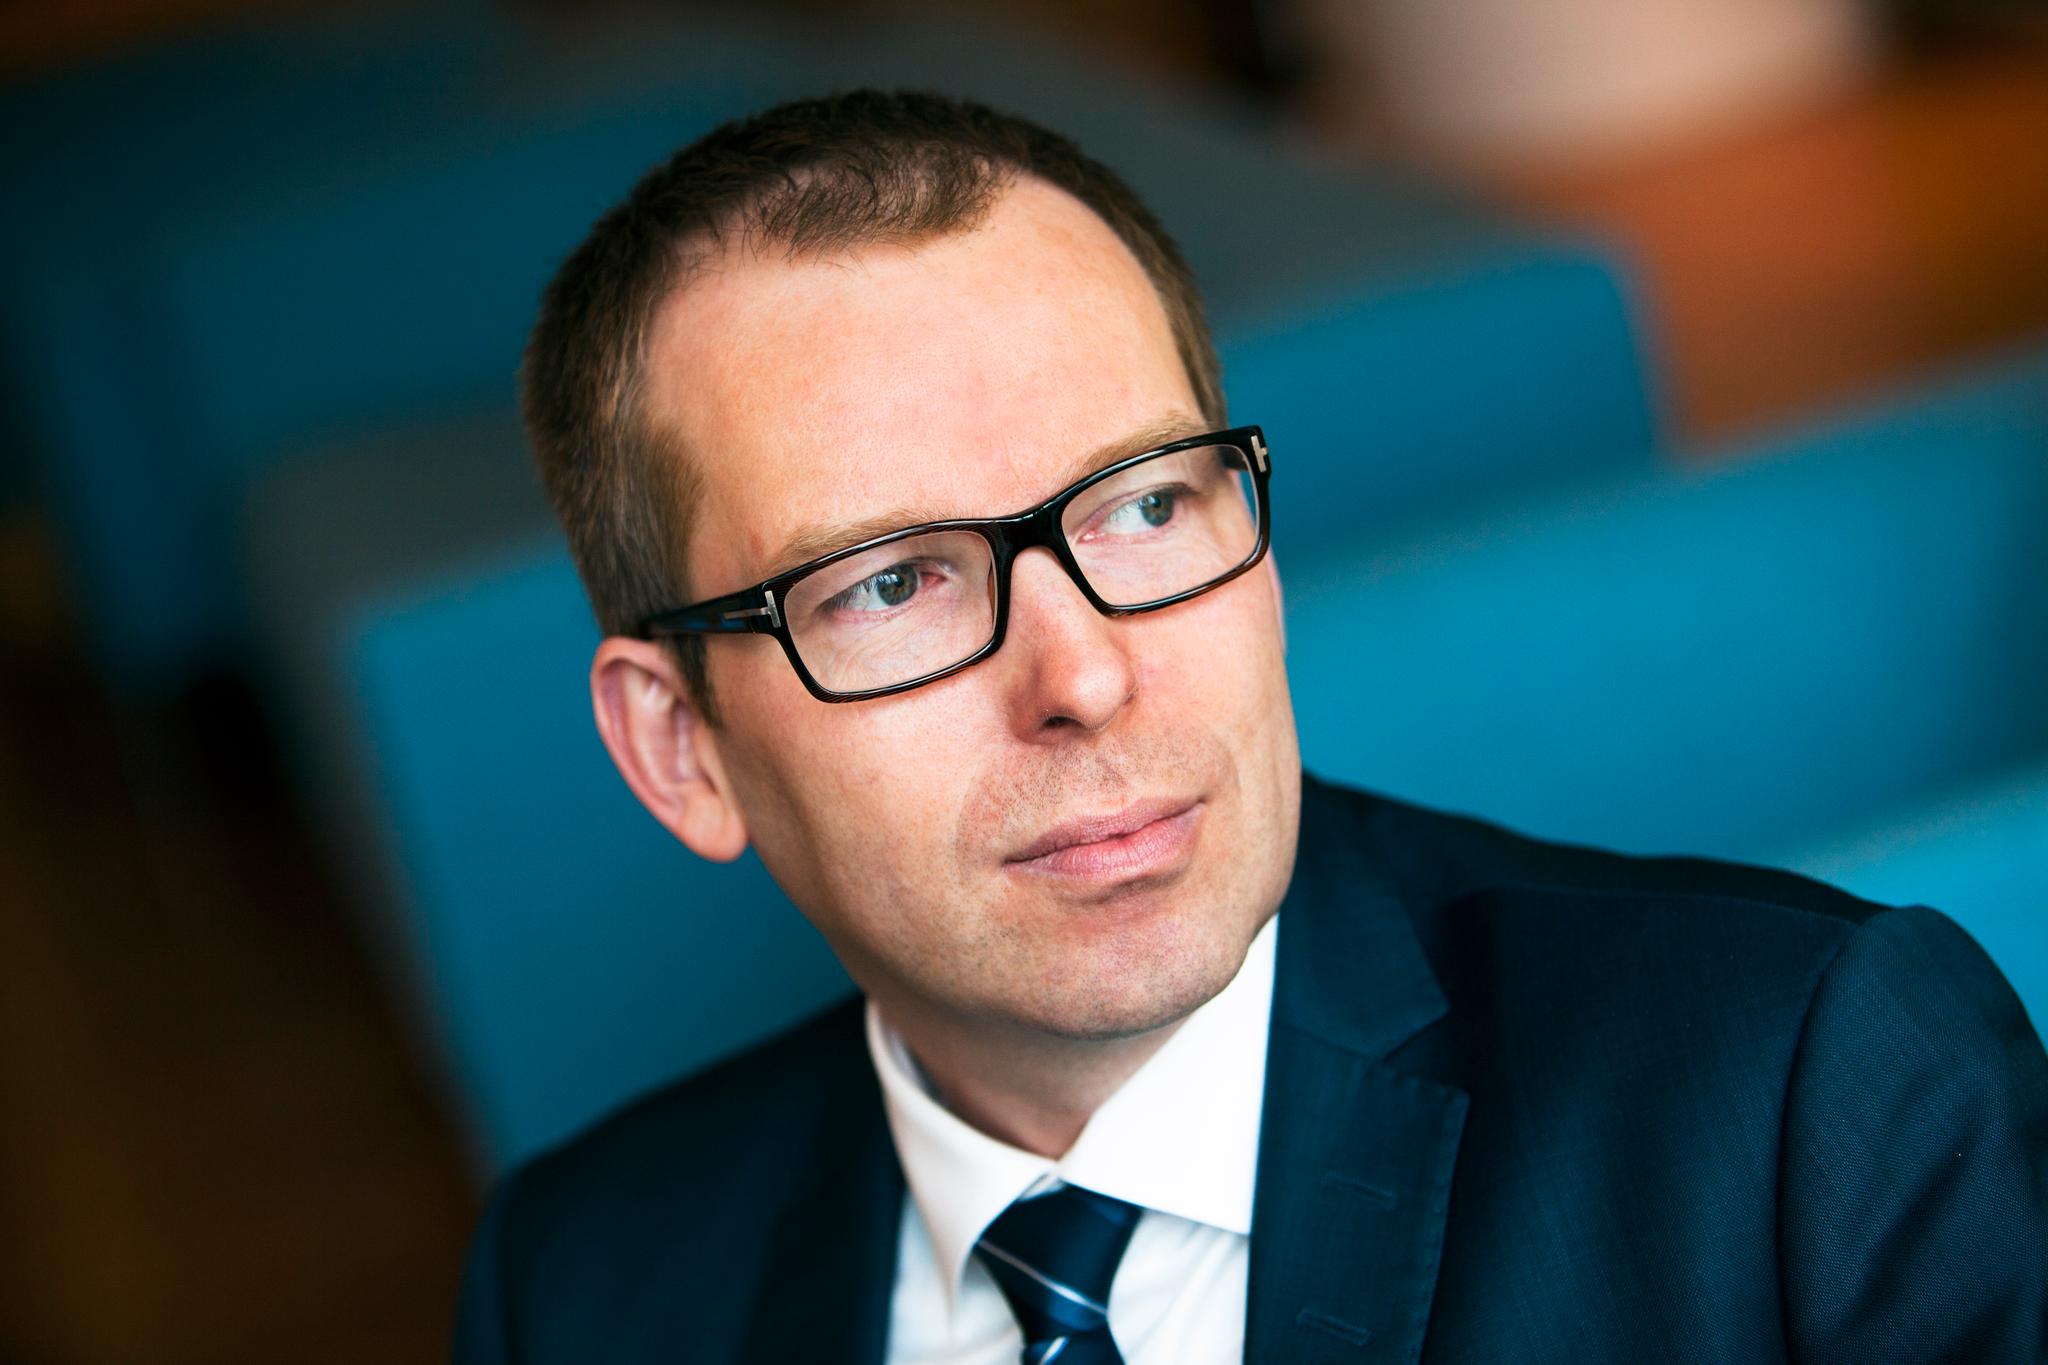 Administrerende direktør Håkon Haugli i Innovasjon Norge legger seg flat og beklager Sommarøy-kampanjen.